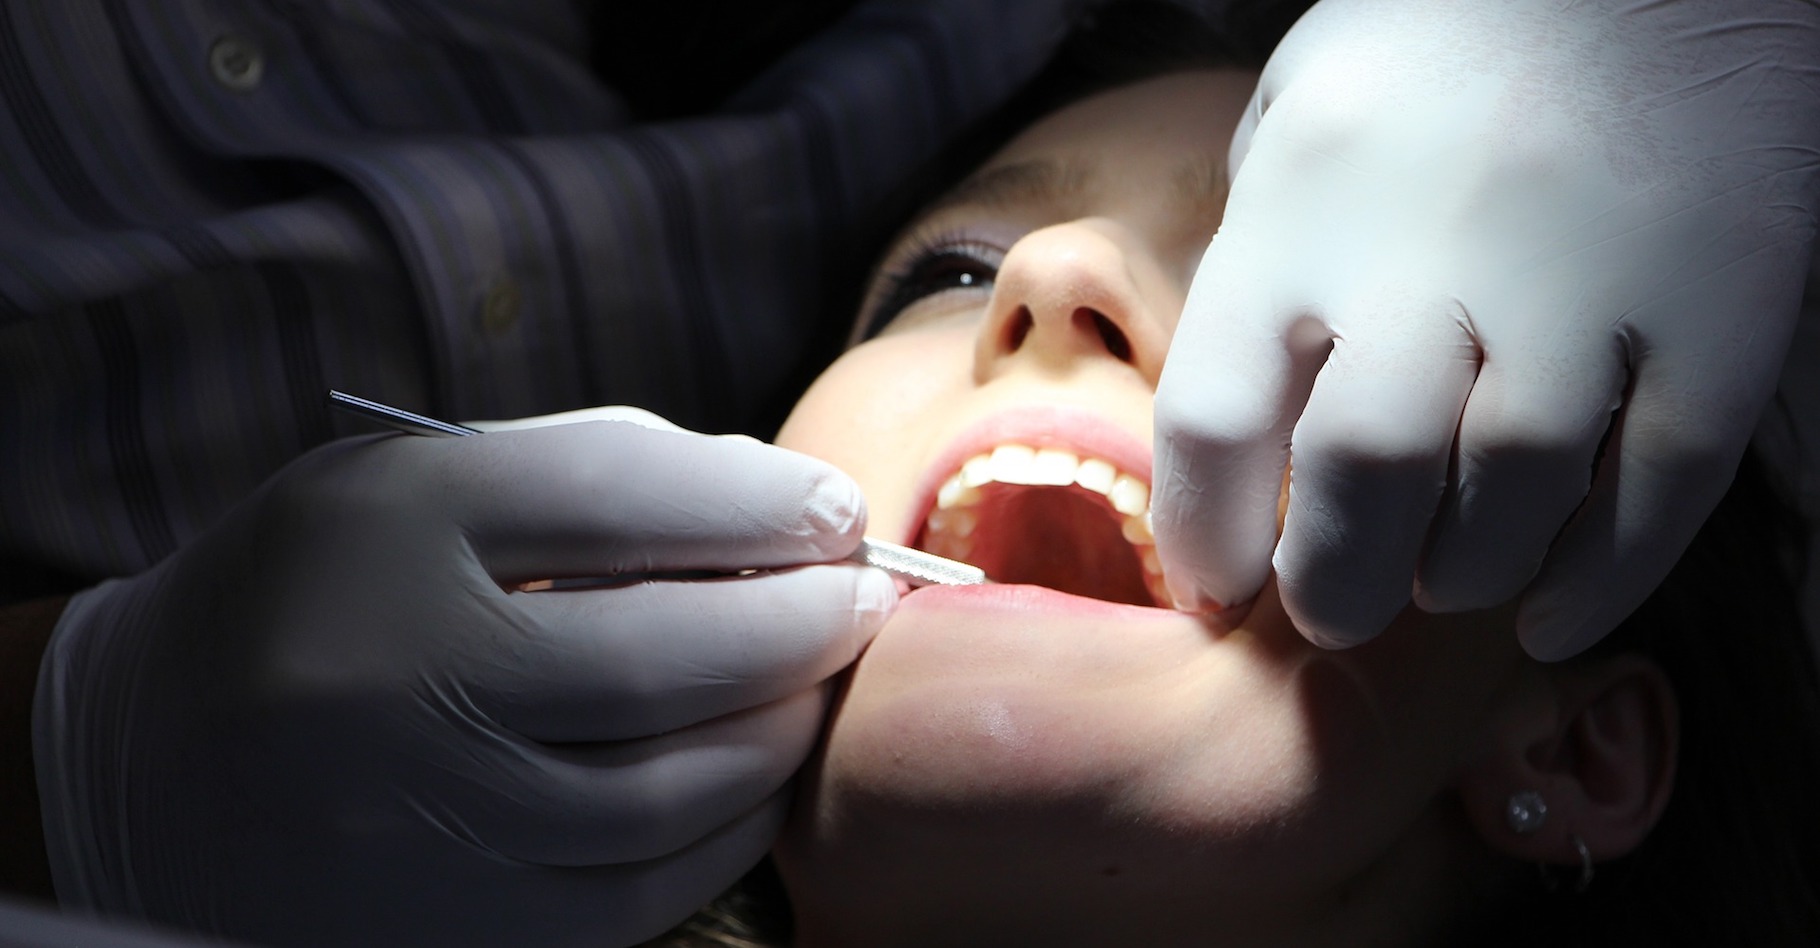 Le terme amalgame est notamment connu dans le secteur de la dentisterie où il désigne un matériau utilisé pour combler les trous laissés dans les dents après élimination de caries. © rgerber, Pixabay, DP